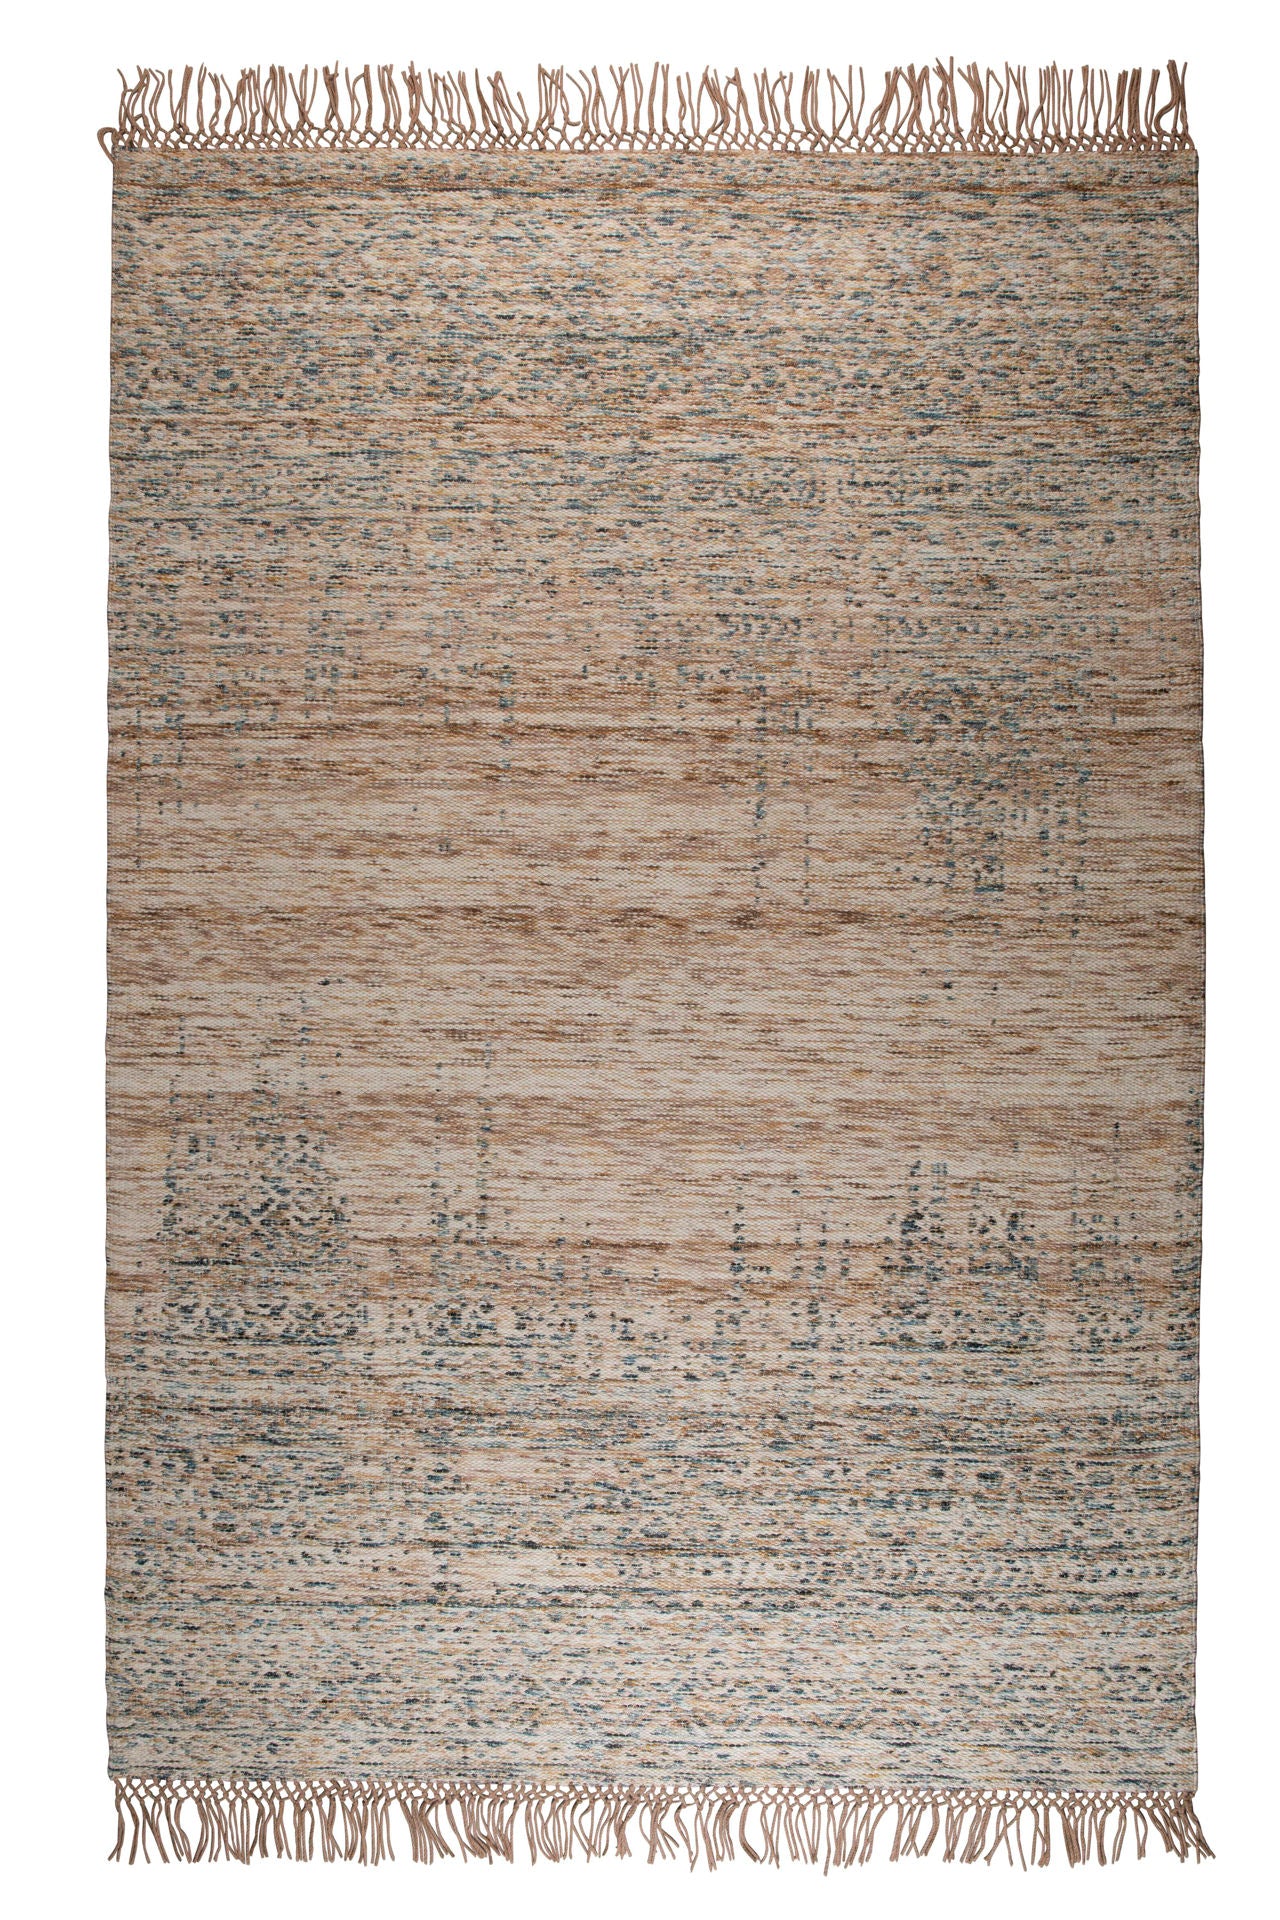 Tapis Nancy's Farmersville - Classique - Beige - Laine, Polyester, Coton - 170 cm x 240 cm x cm